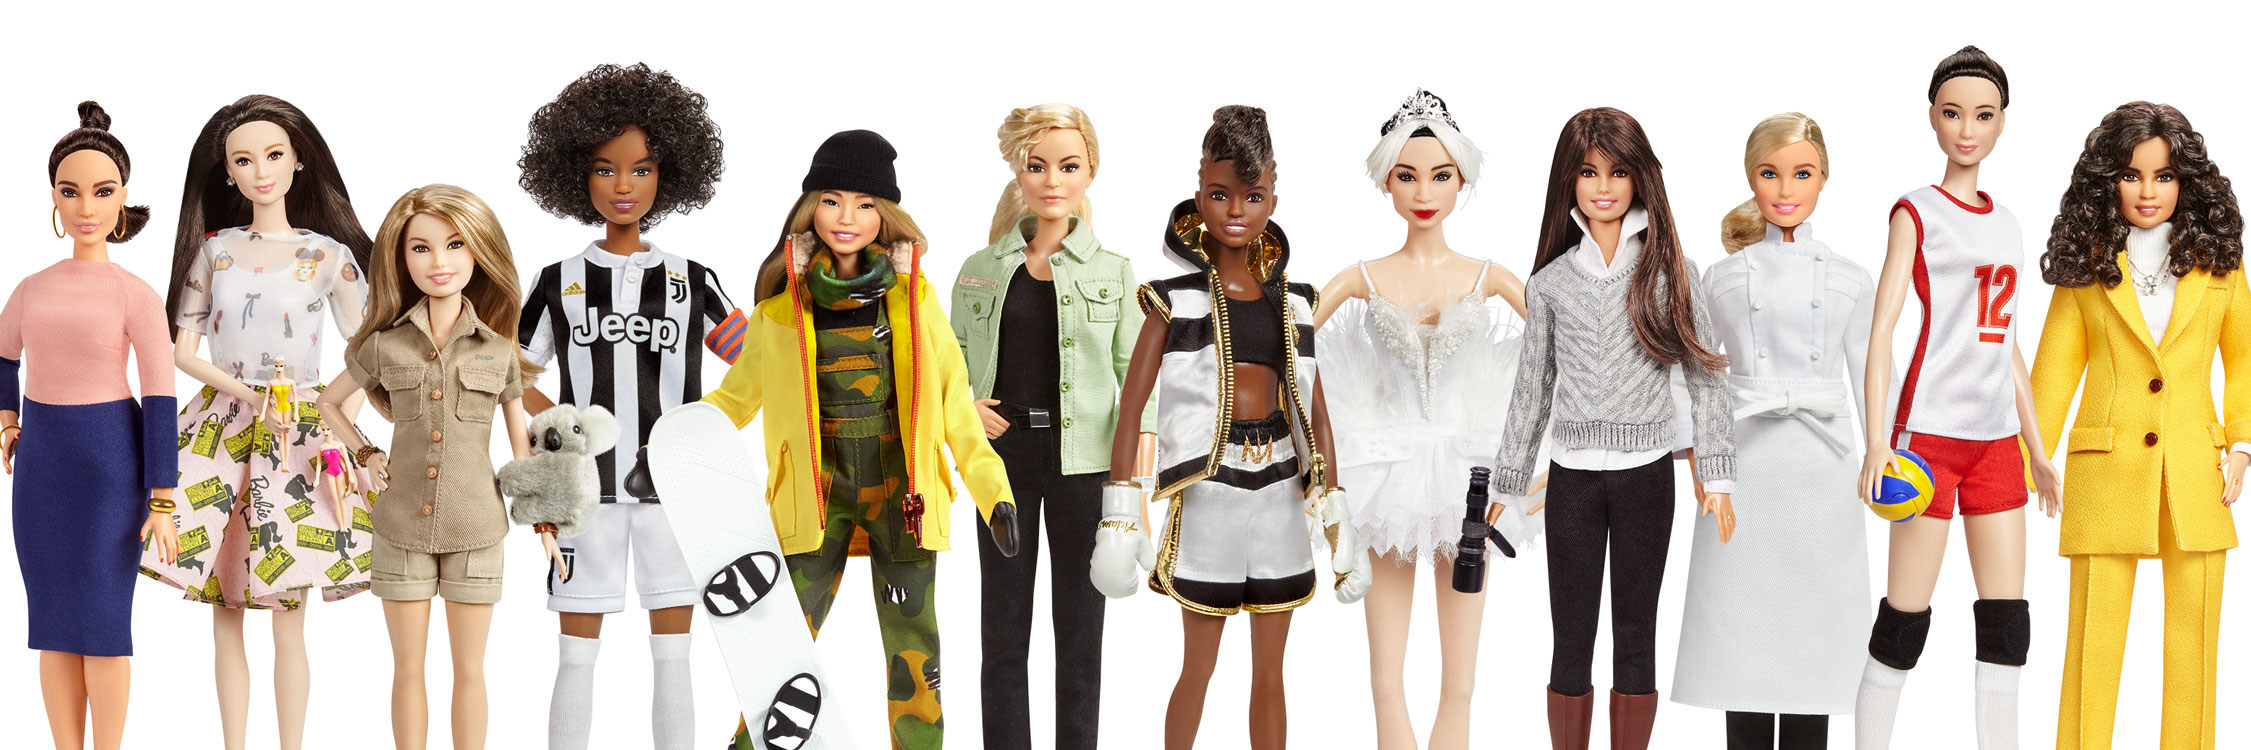 Mattel_Barbie_Role_Models.jpg